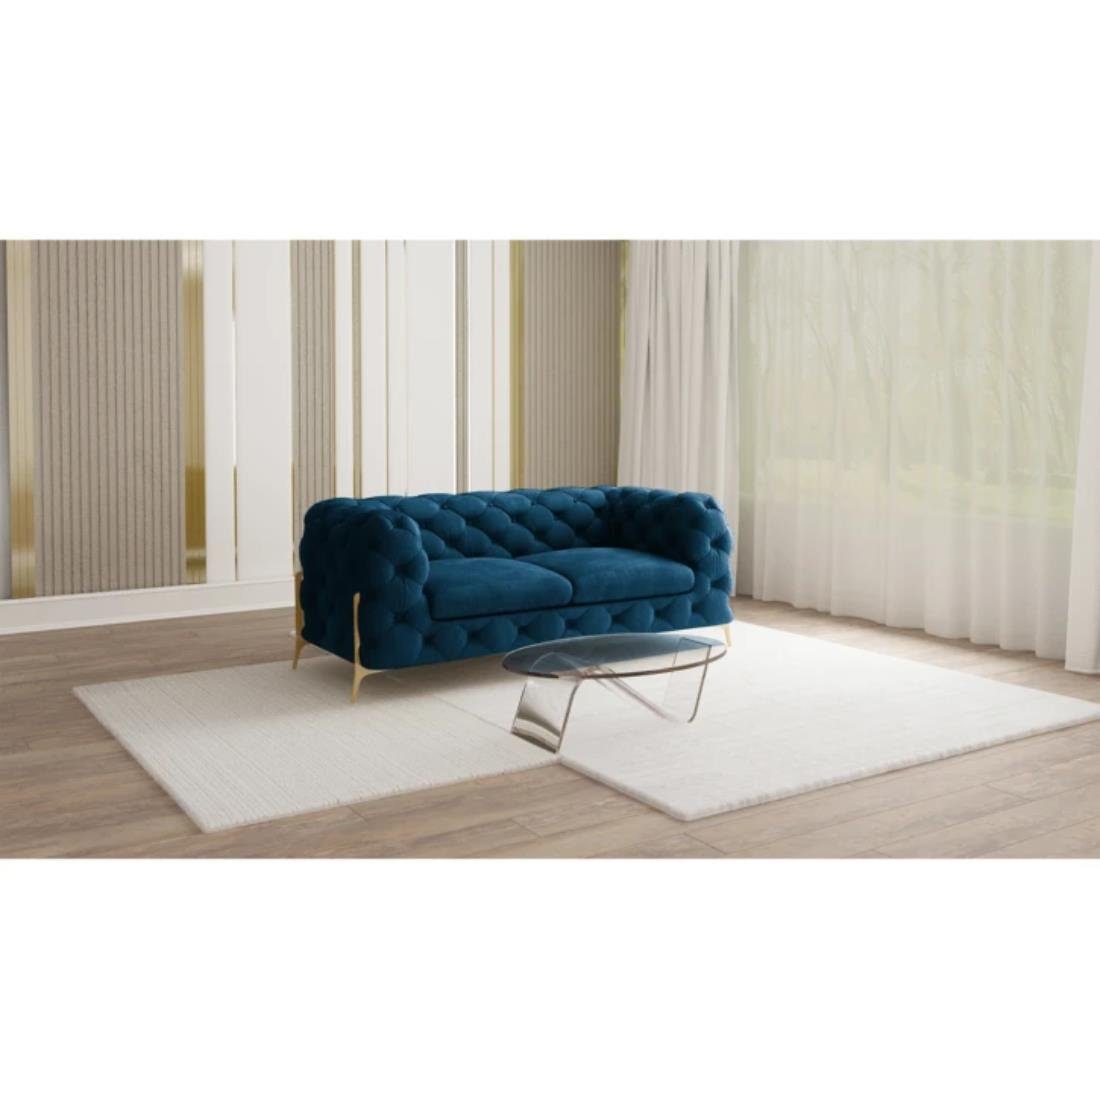 S-Style Möbel 2-Sitzer Ashley Chesterfield Sofa mit Goldene Metall Füßen, mit Wellenfederung Marineblau